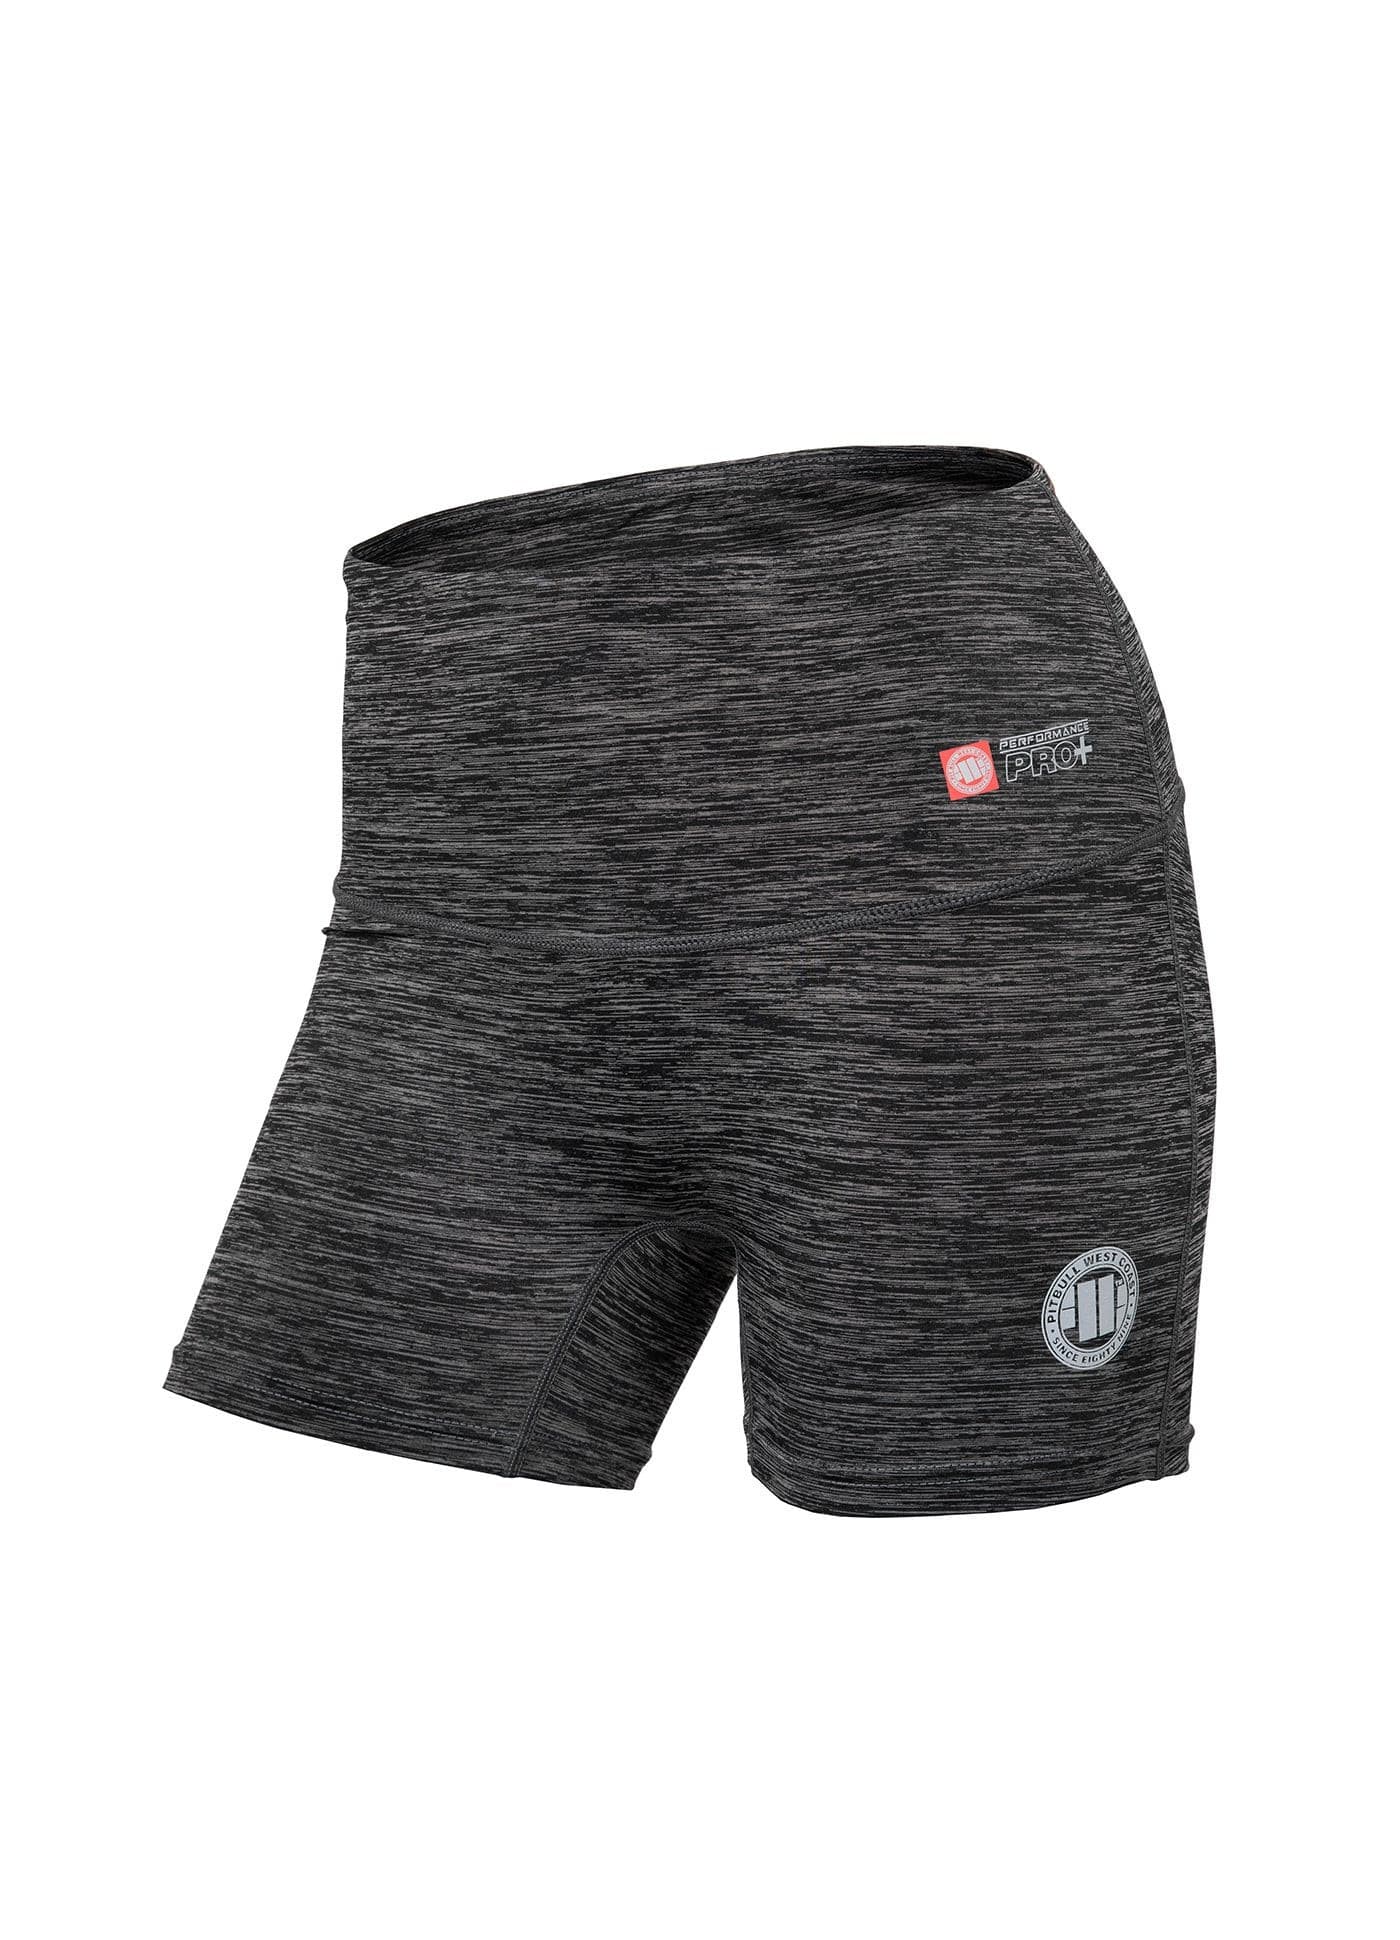 Black Workout Short with Compression Pants - Men's Sportswear /  Alongwear.com – Along Wear